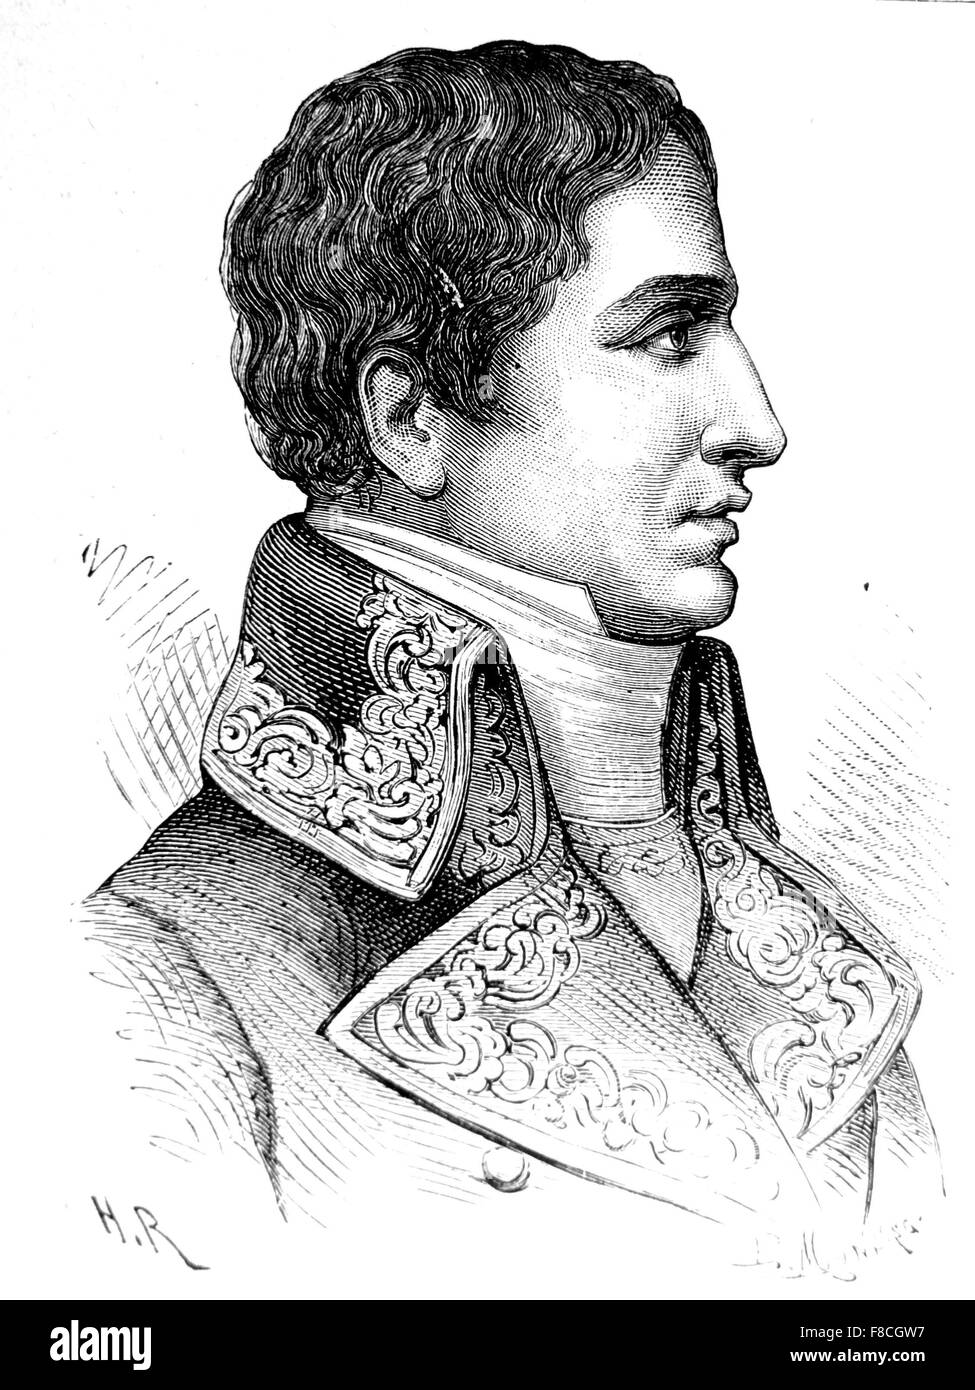 LUCIEN BONAPARTE (1775-1840), fratello minore di Giuseppe e Napoleone Bonaparte Foto Stock